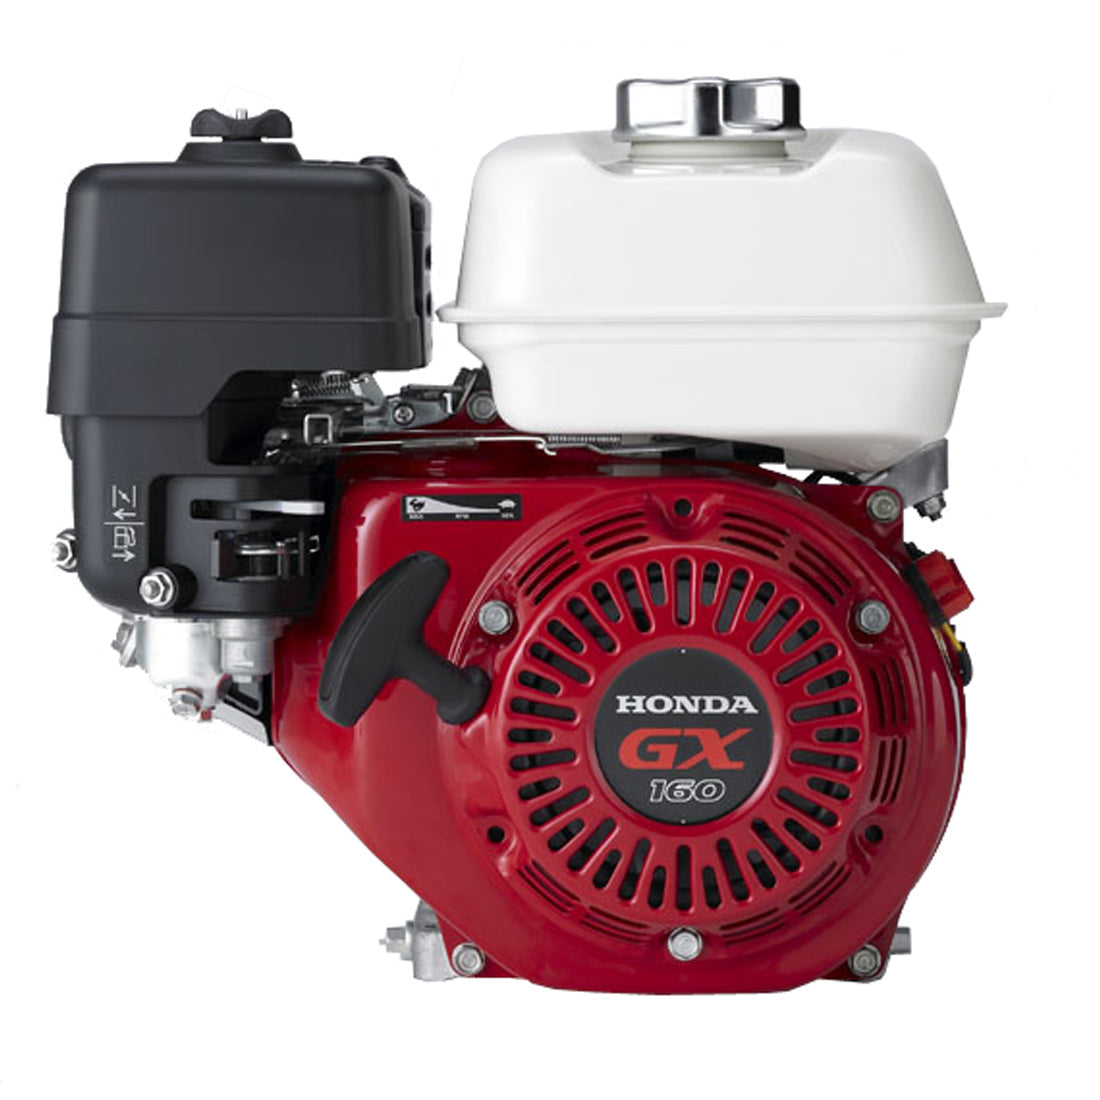 Honda 5.8HP Replacement Engine #GX160UT2QX2